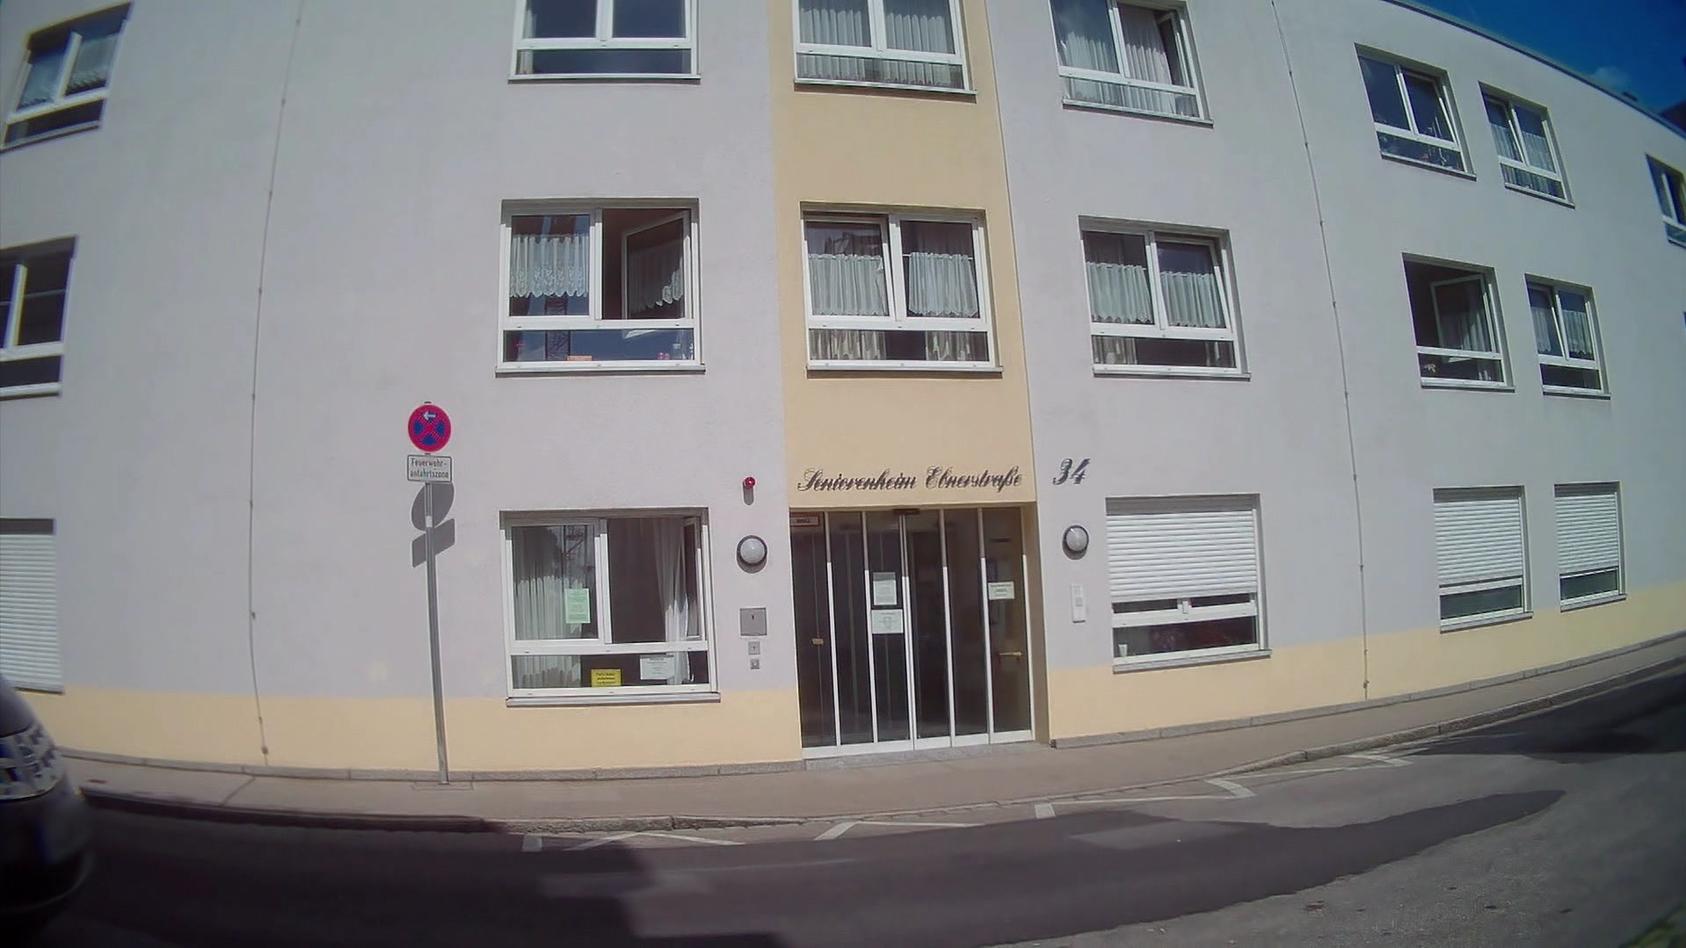 Seniorenheim Ebnerstraße in Augsburg